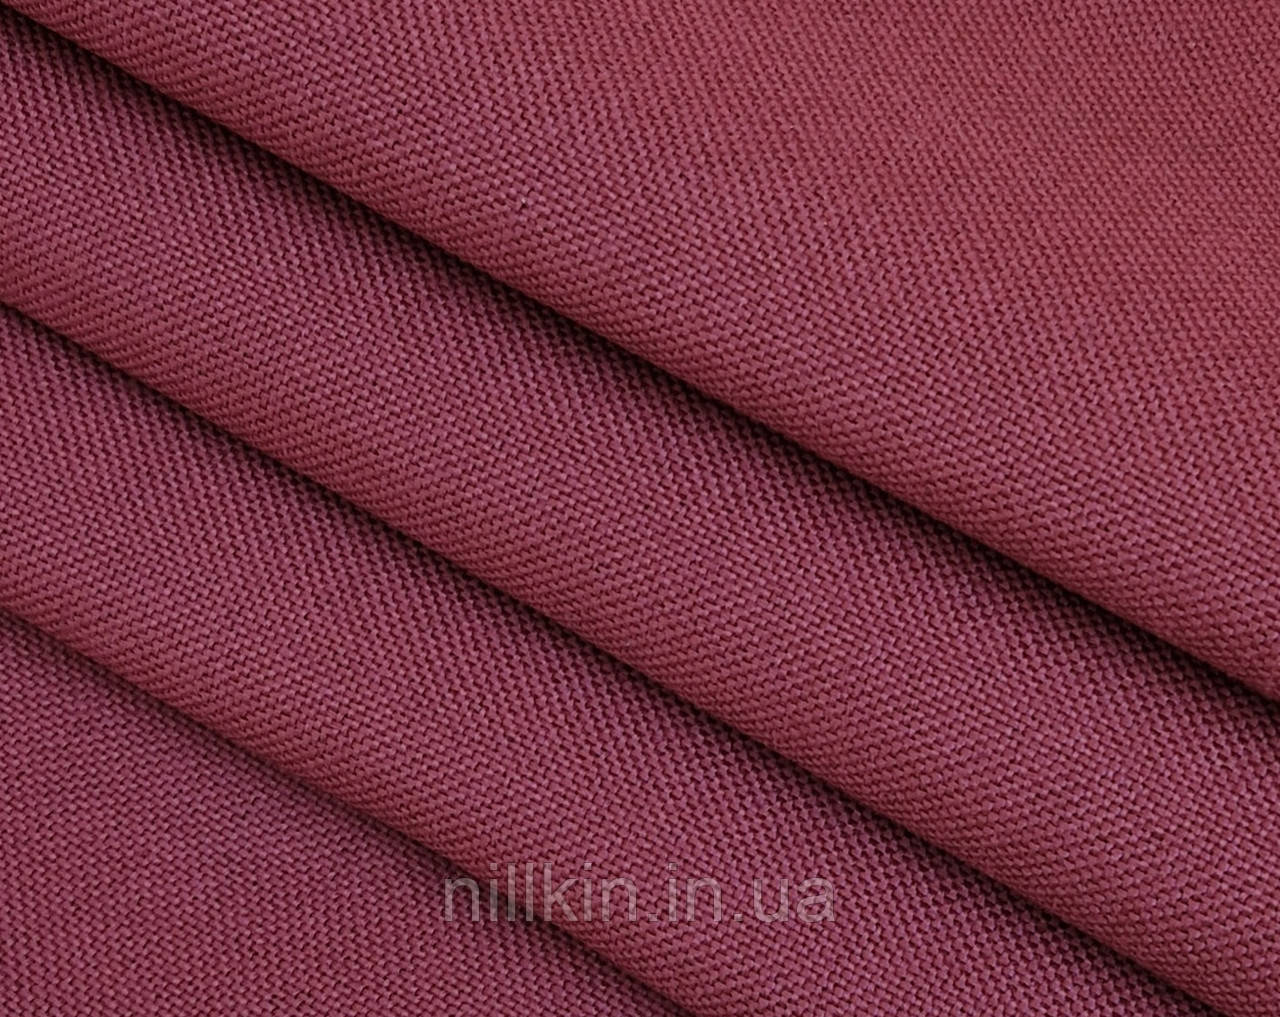 Меблева тканина CR рогожка для оббивки меблів (крісла, дивана, подушок) бордовый